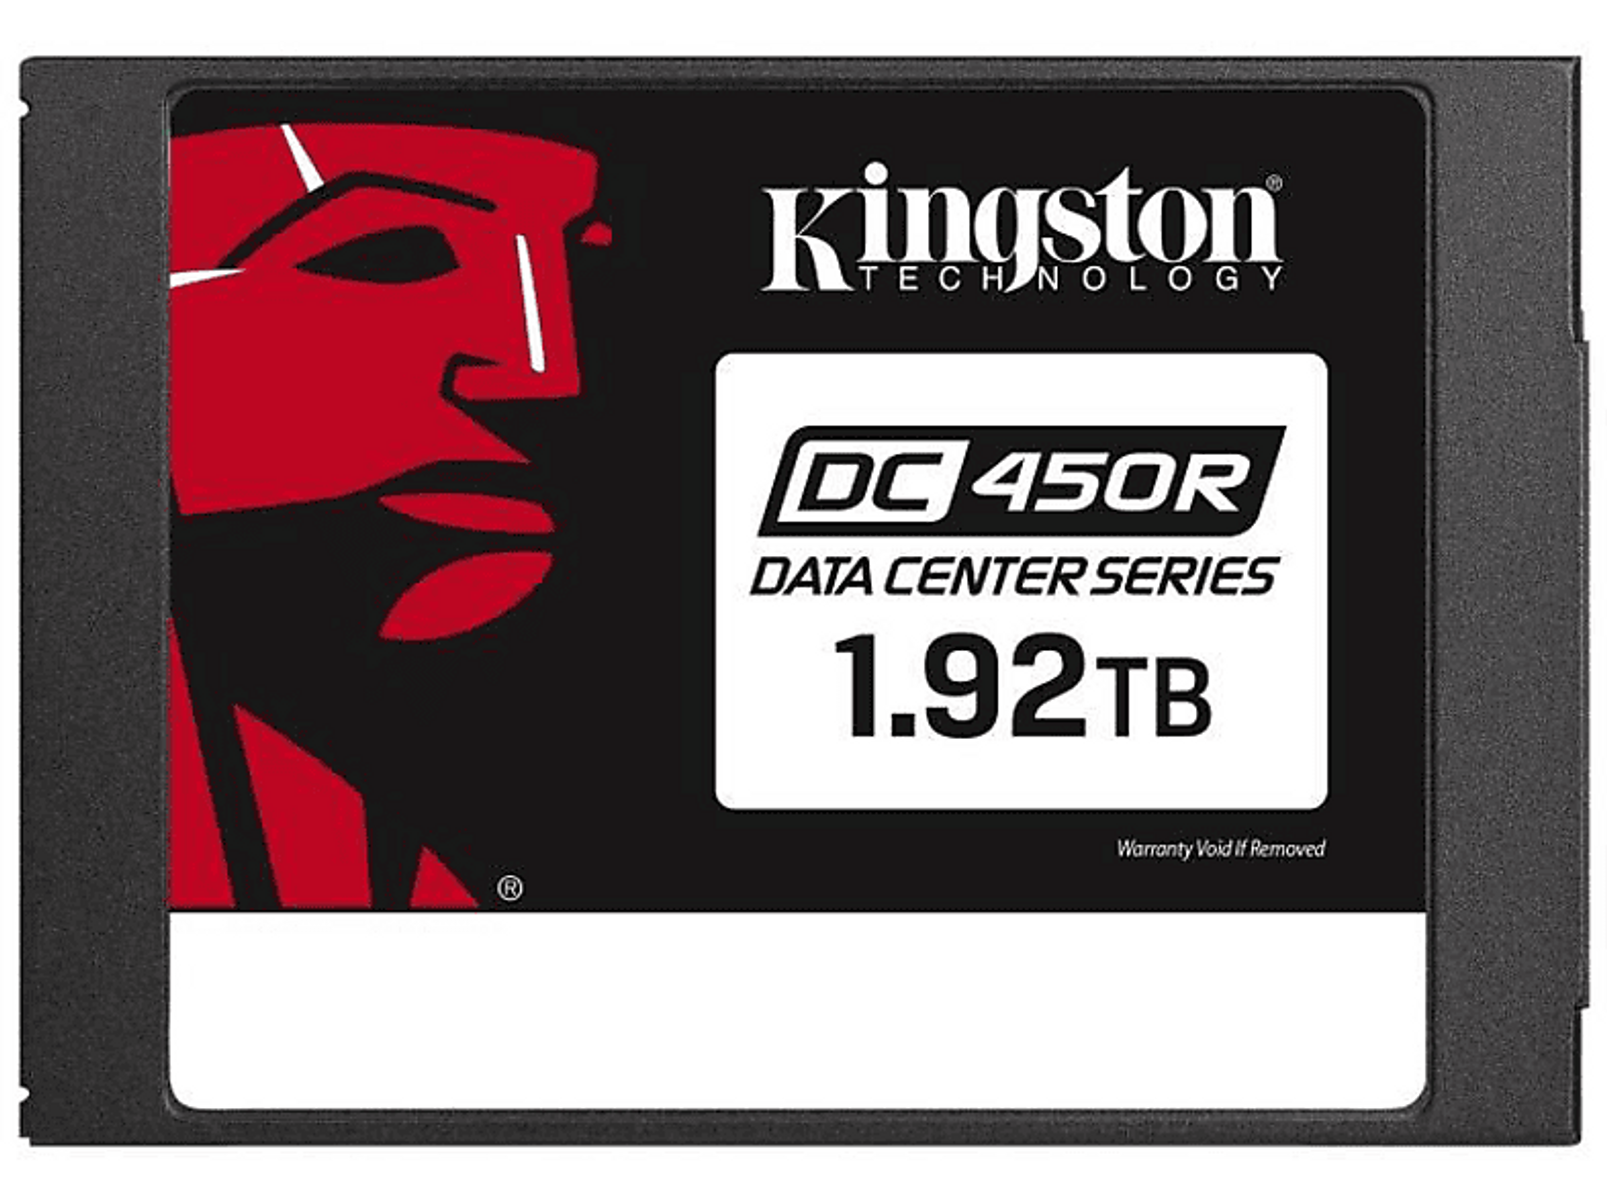 KINGSTON Data Center SSD, 2 intern intern, 2,5 DC450R 6Gb/s, TB, (SSD Zoll, - verschlüsselt), SATA 1.92TB